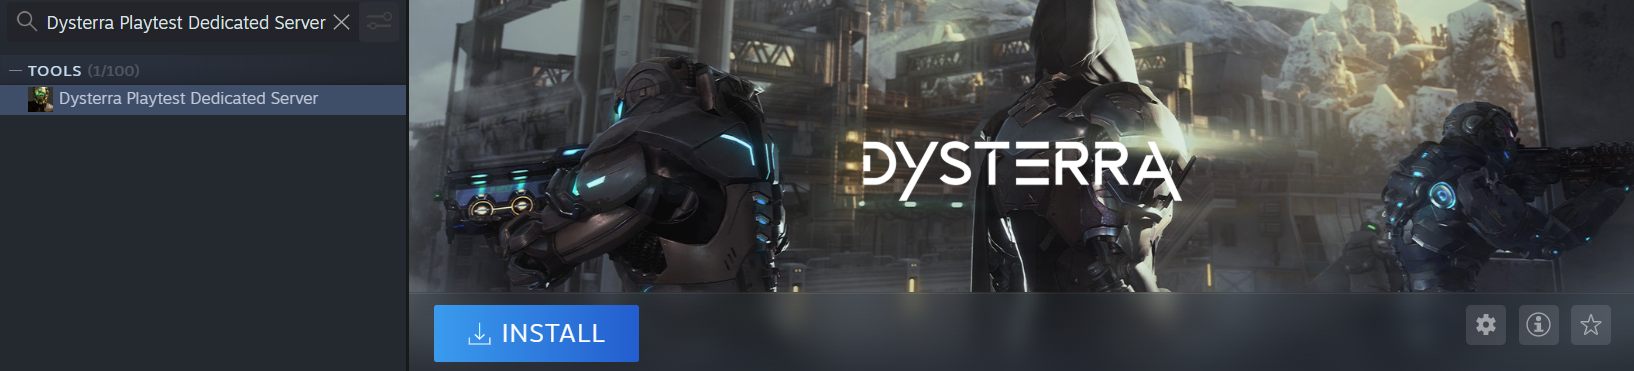 Dysterra Playtest - Creating Custom Server Guide - Install Dysterra Playtest Dedicated Server - 79C6D3F